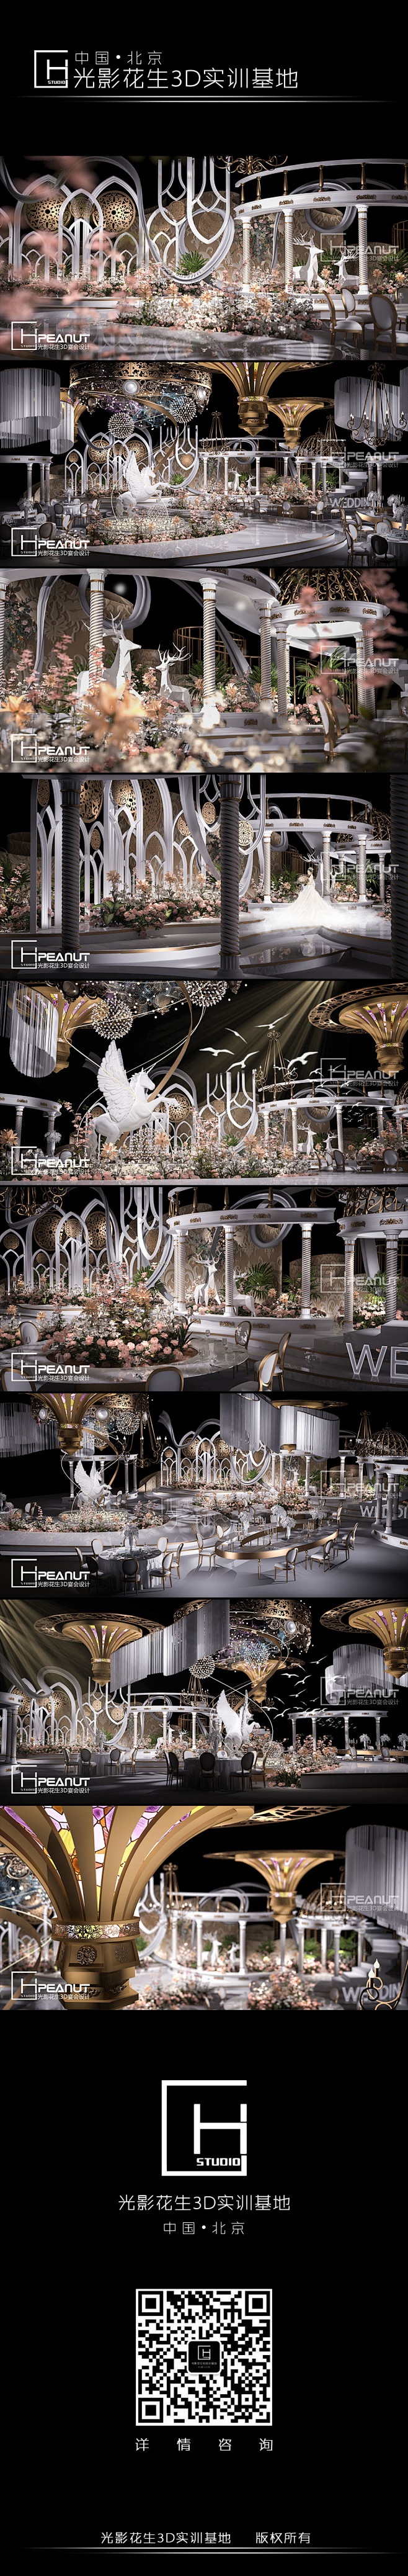 欧式婚礼3D效果图